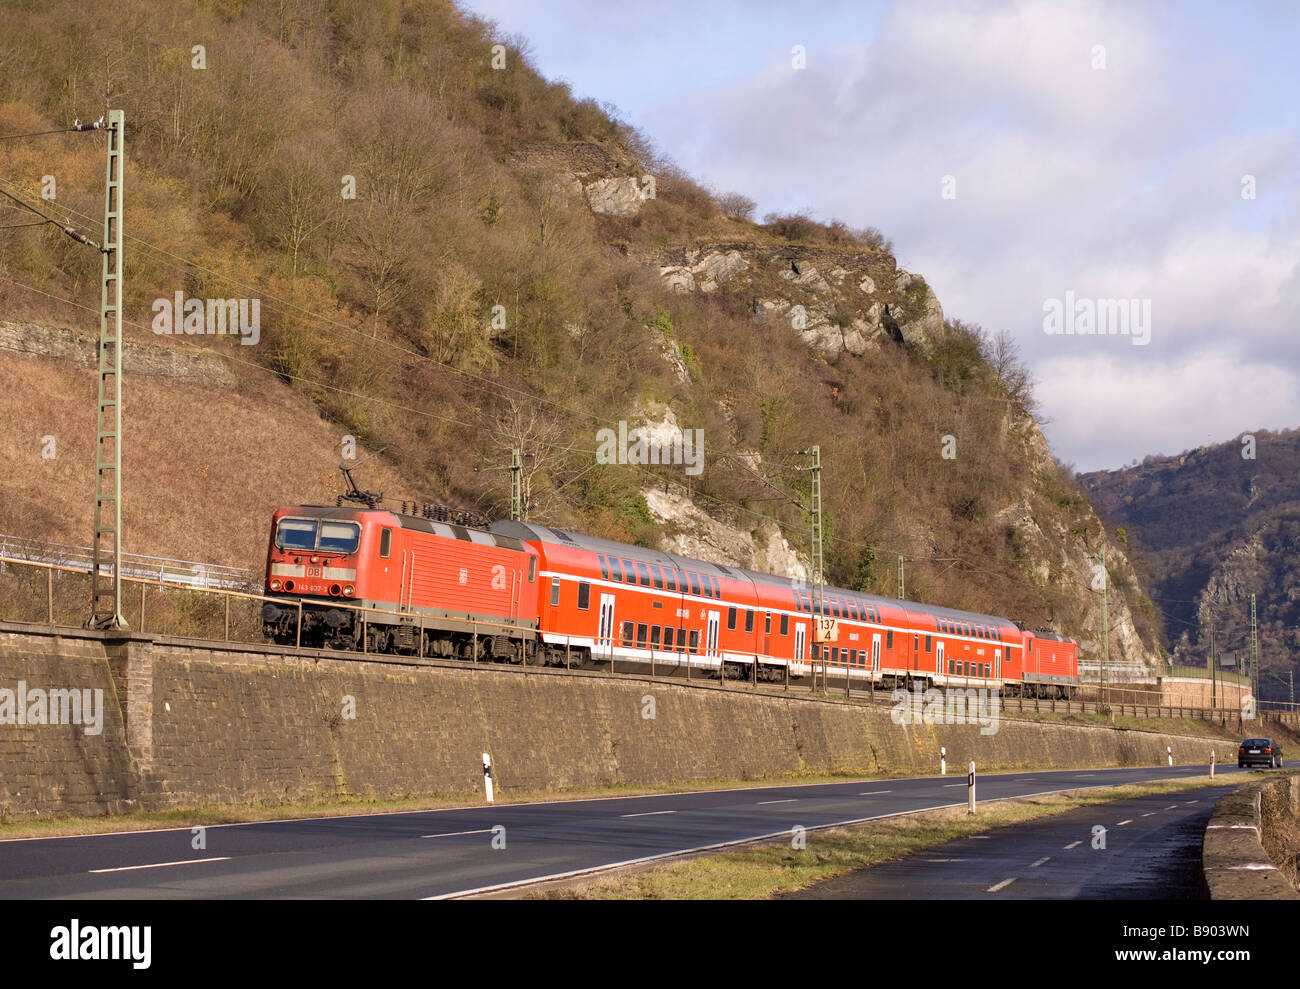 DB Bahn classe 143 locomotive elettriche con un BD Regio servizio a Bacharach Germania Foto Stock